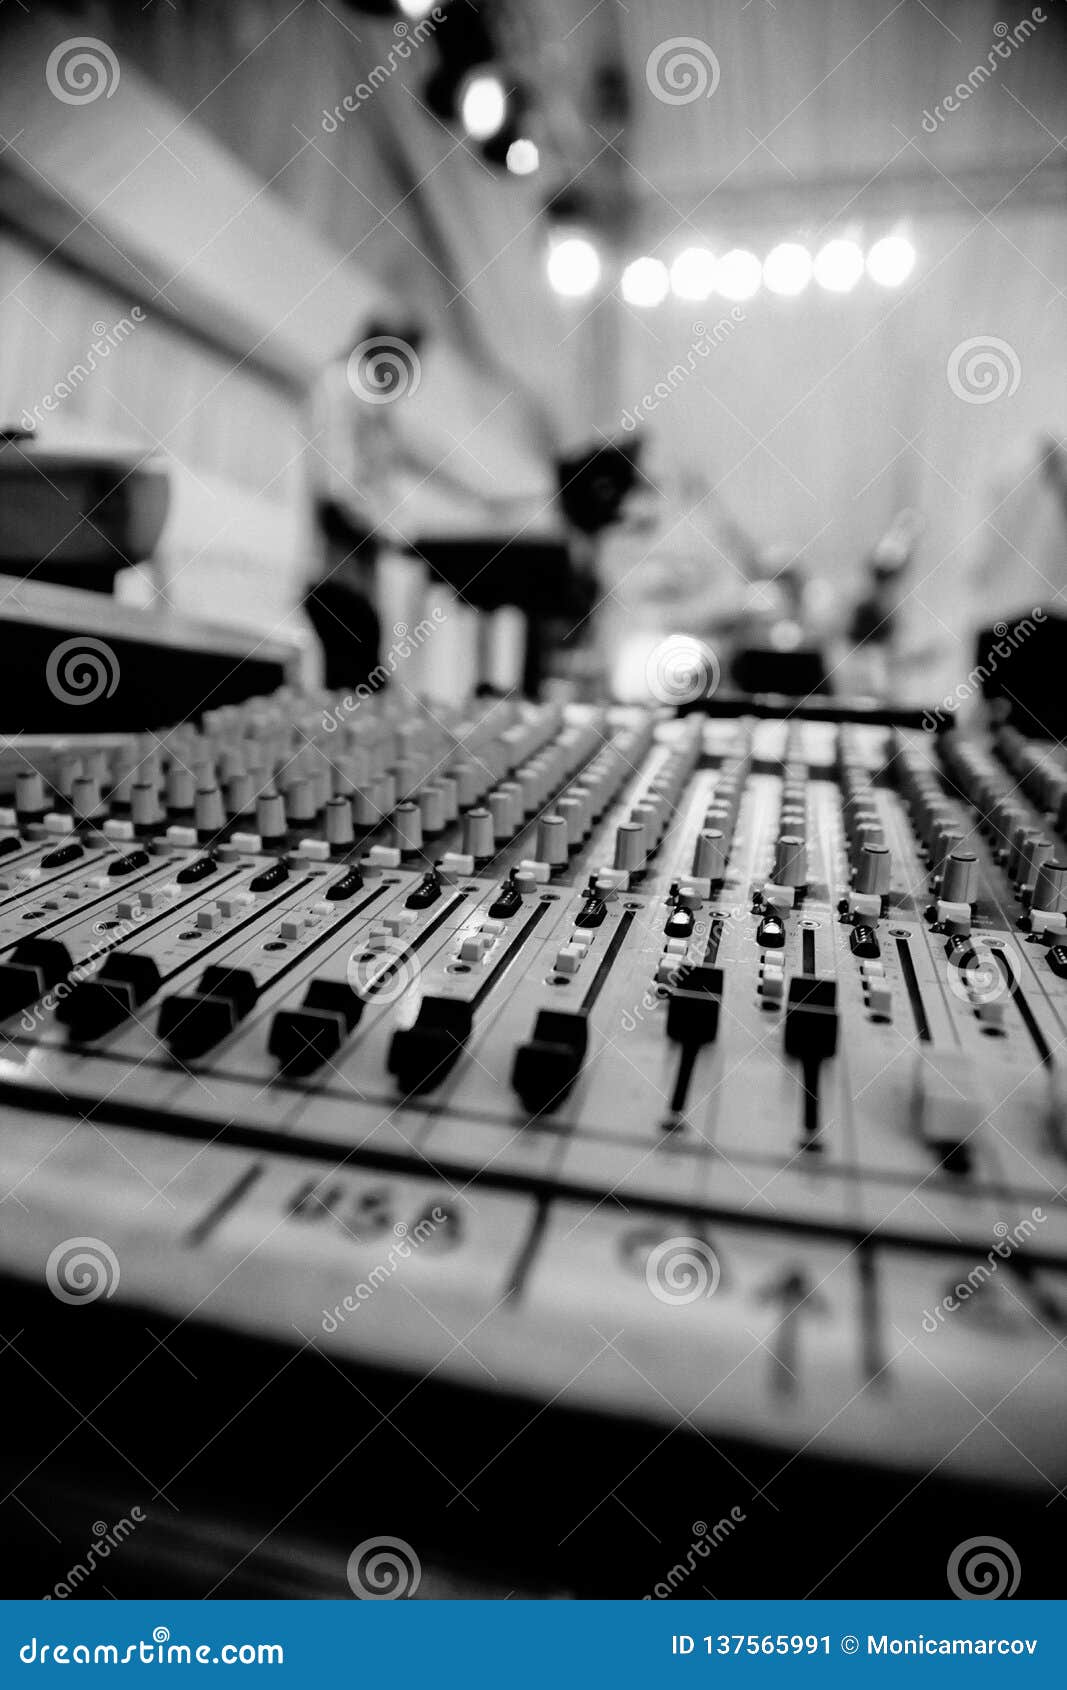 Audio Mixer Close Up. Music Mixer Live. Stock Image - Image of